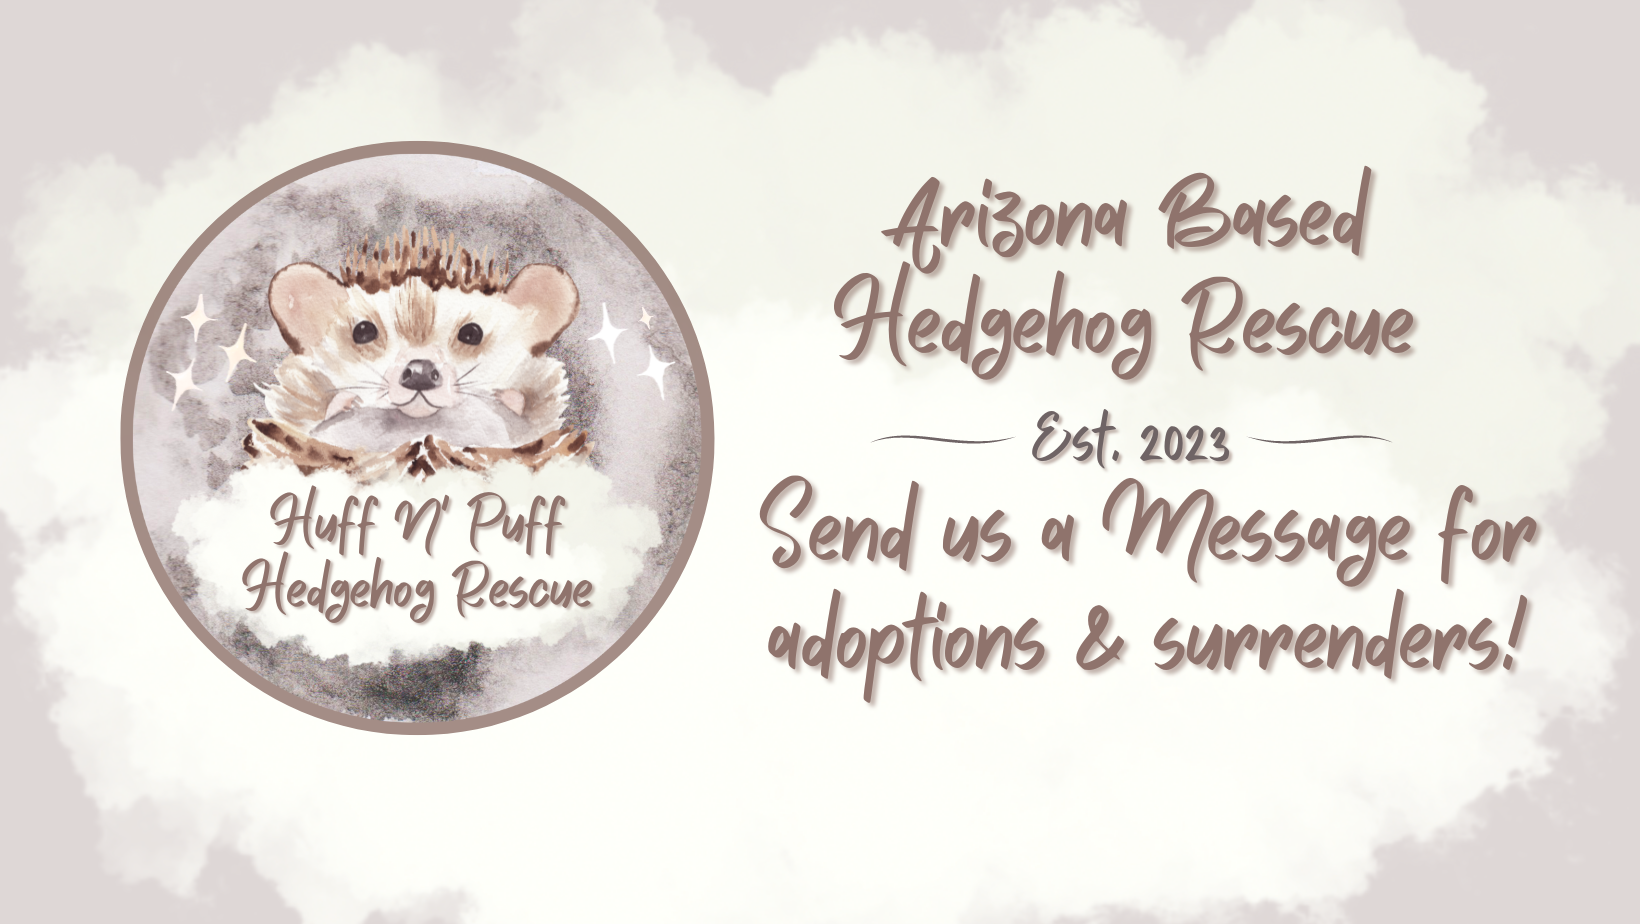 Huff N Puff Hedgehog Rescue - Arizona Hedgehog Rescue